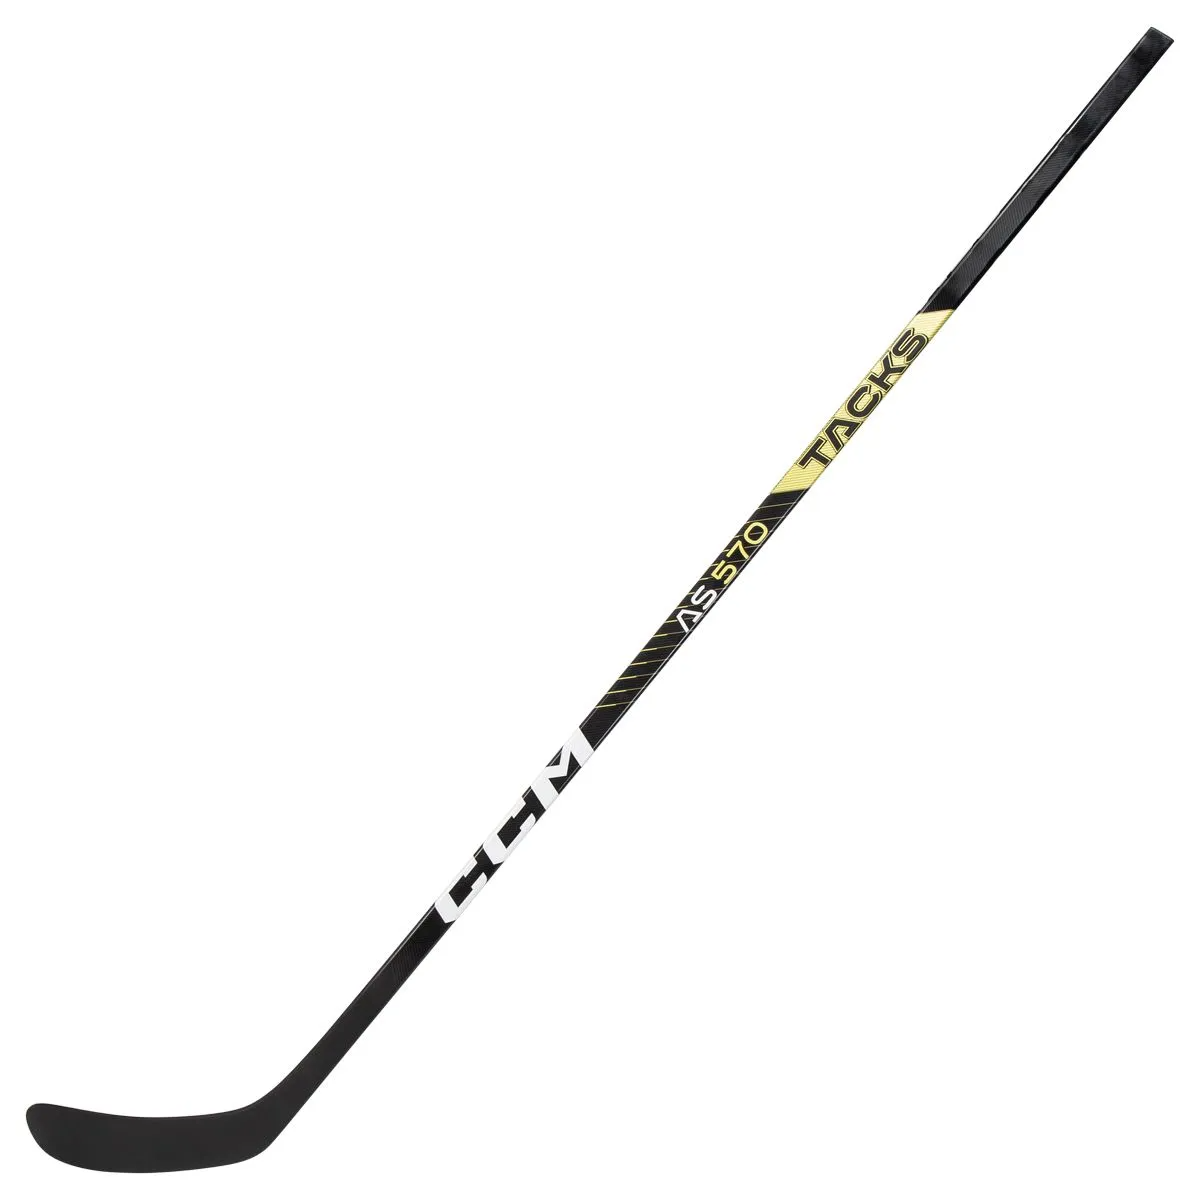 CCM Tacks AS570 Senior Composite Hockey Stick